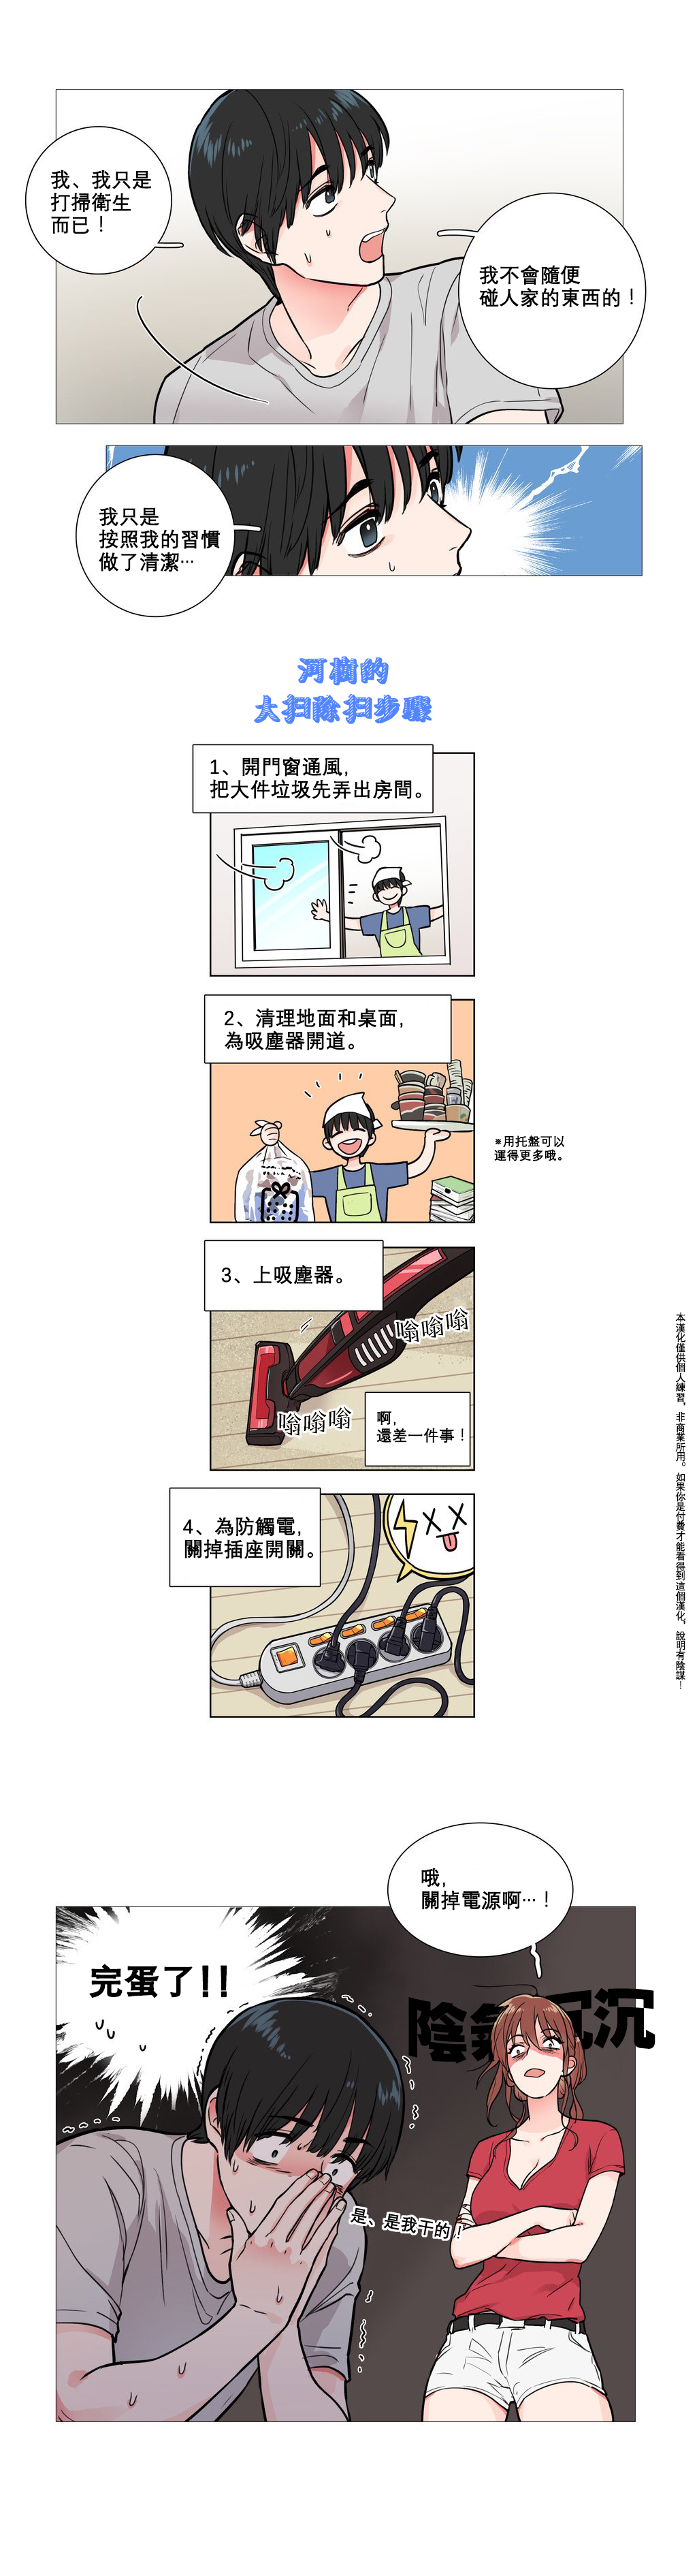 【ジンシャン】サディスティックビューティーCh.1-36【中国語】【17汉化】